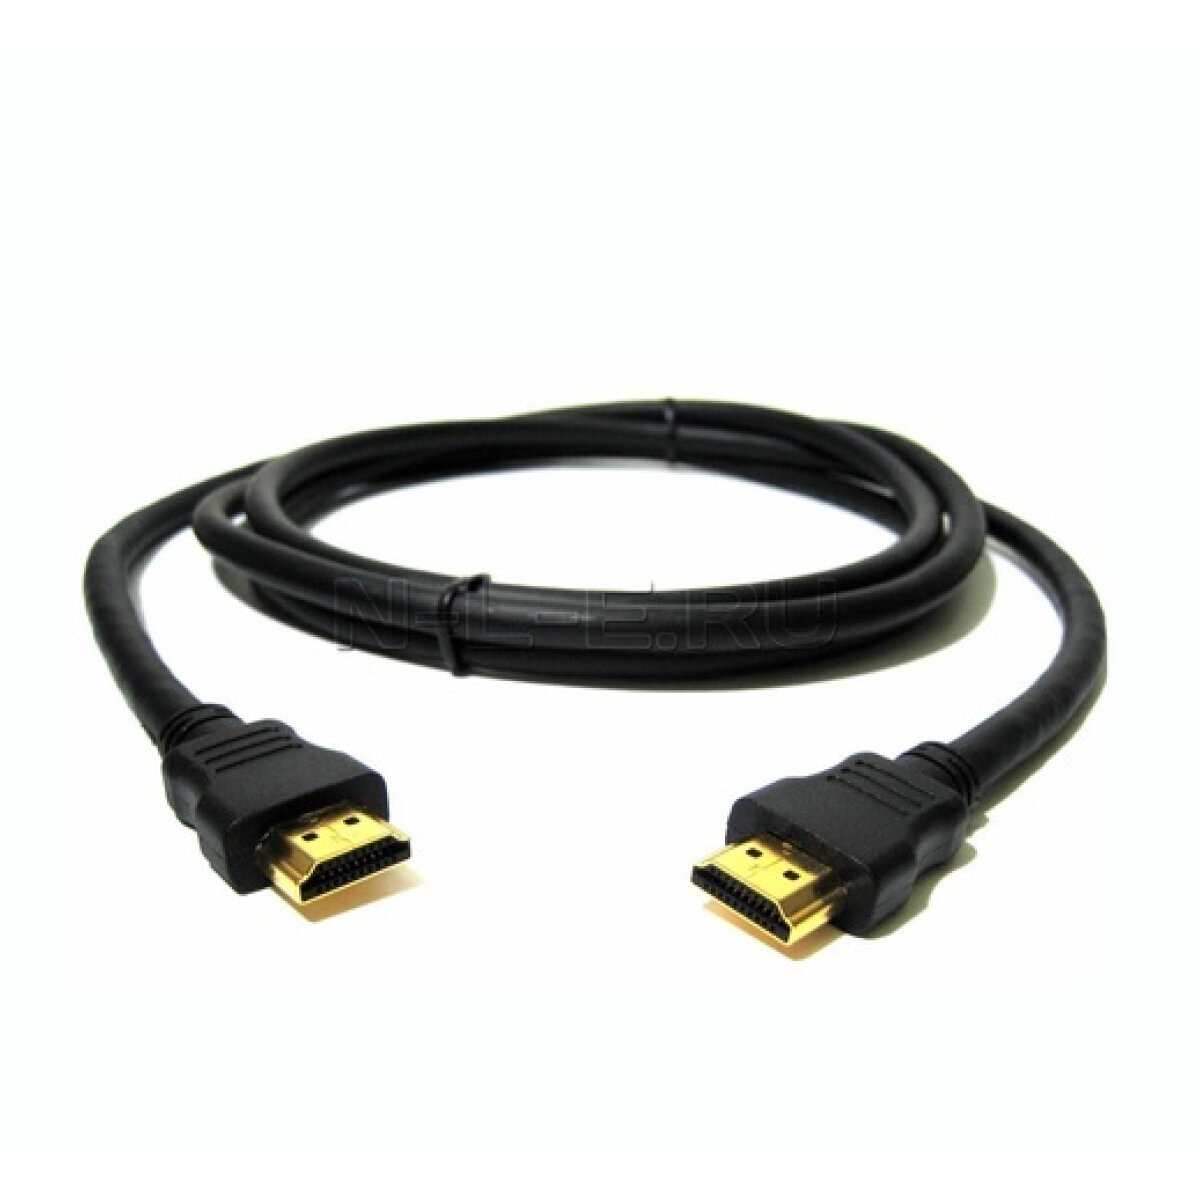 Шнур HDMI-HDMI 1.4a 3D 4K gold 1.5m позолоченные контакты